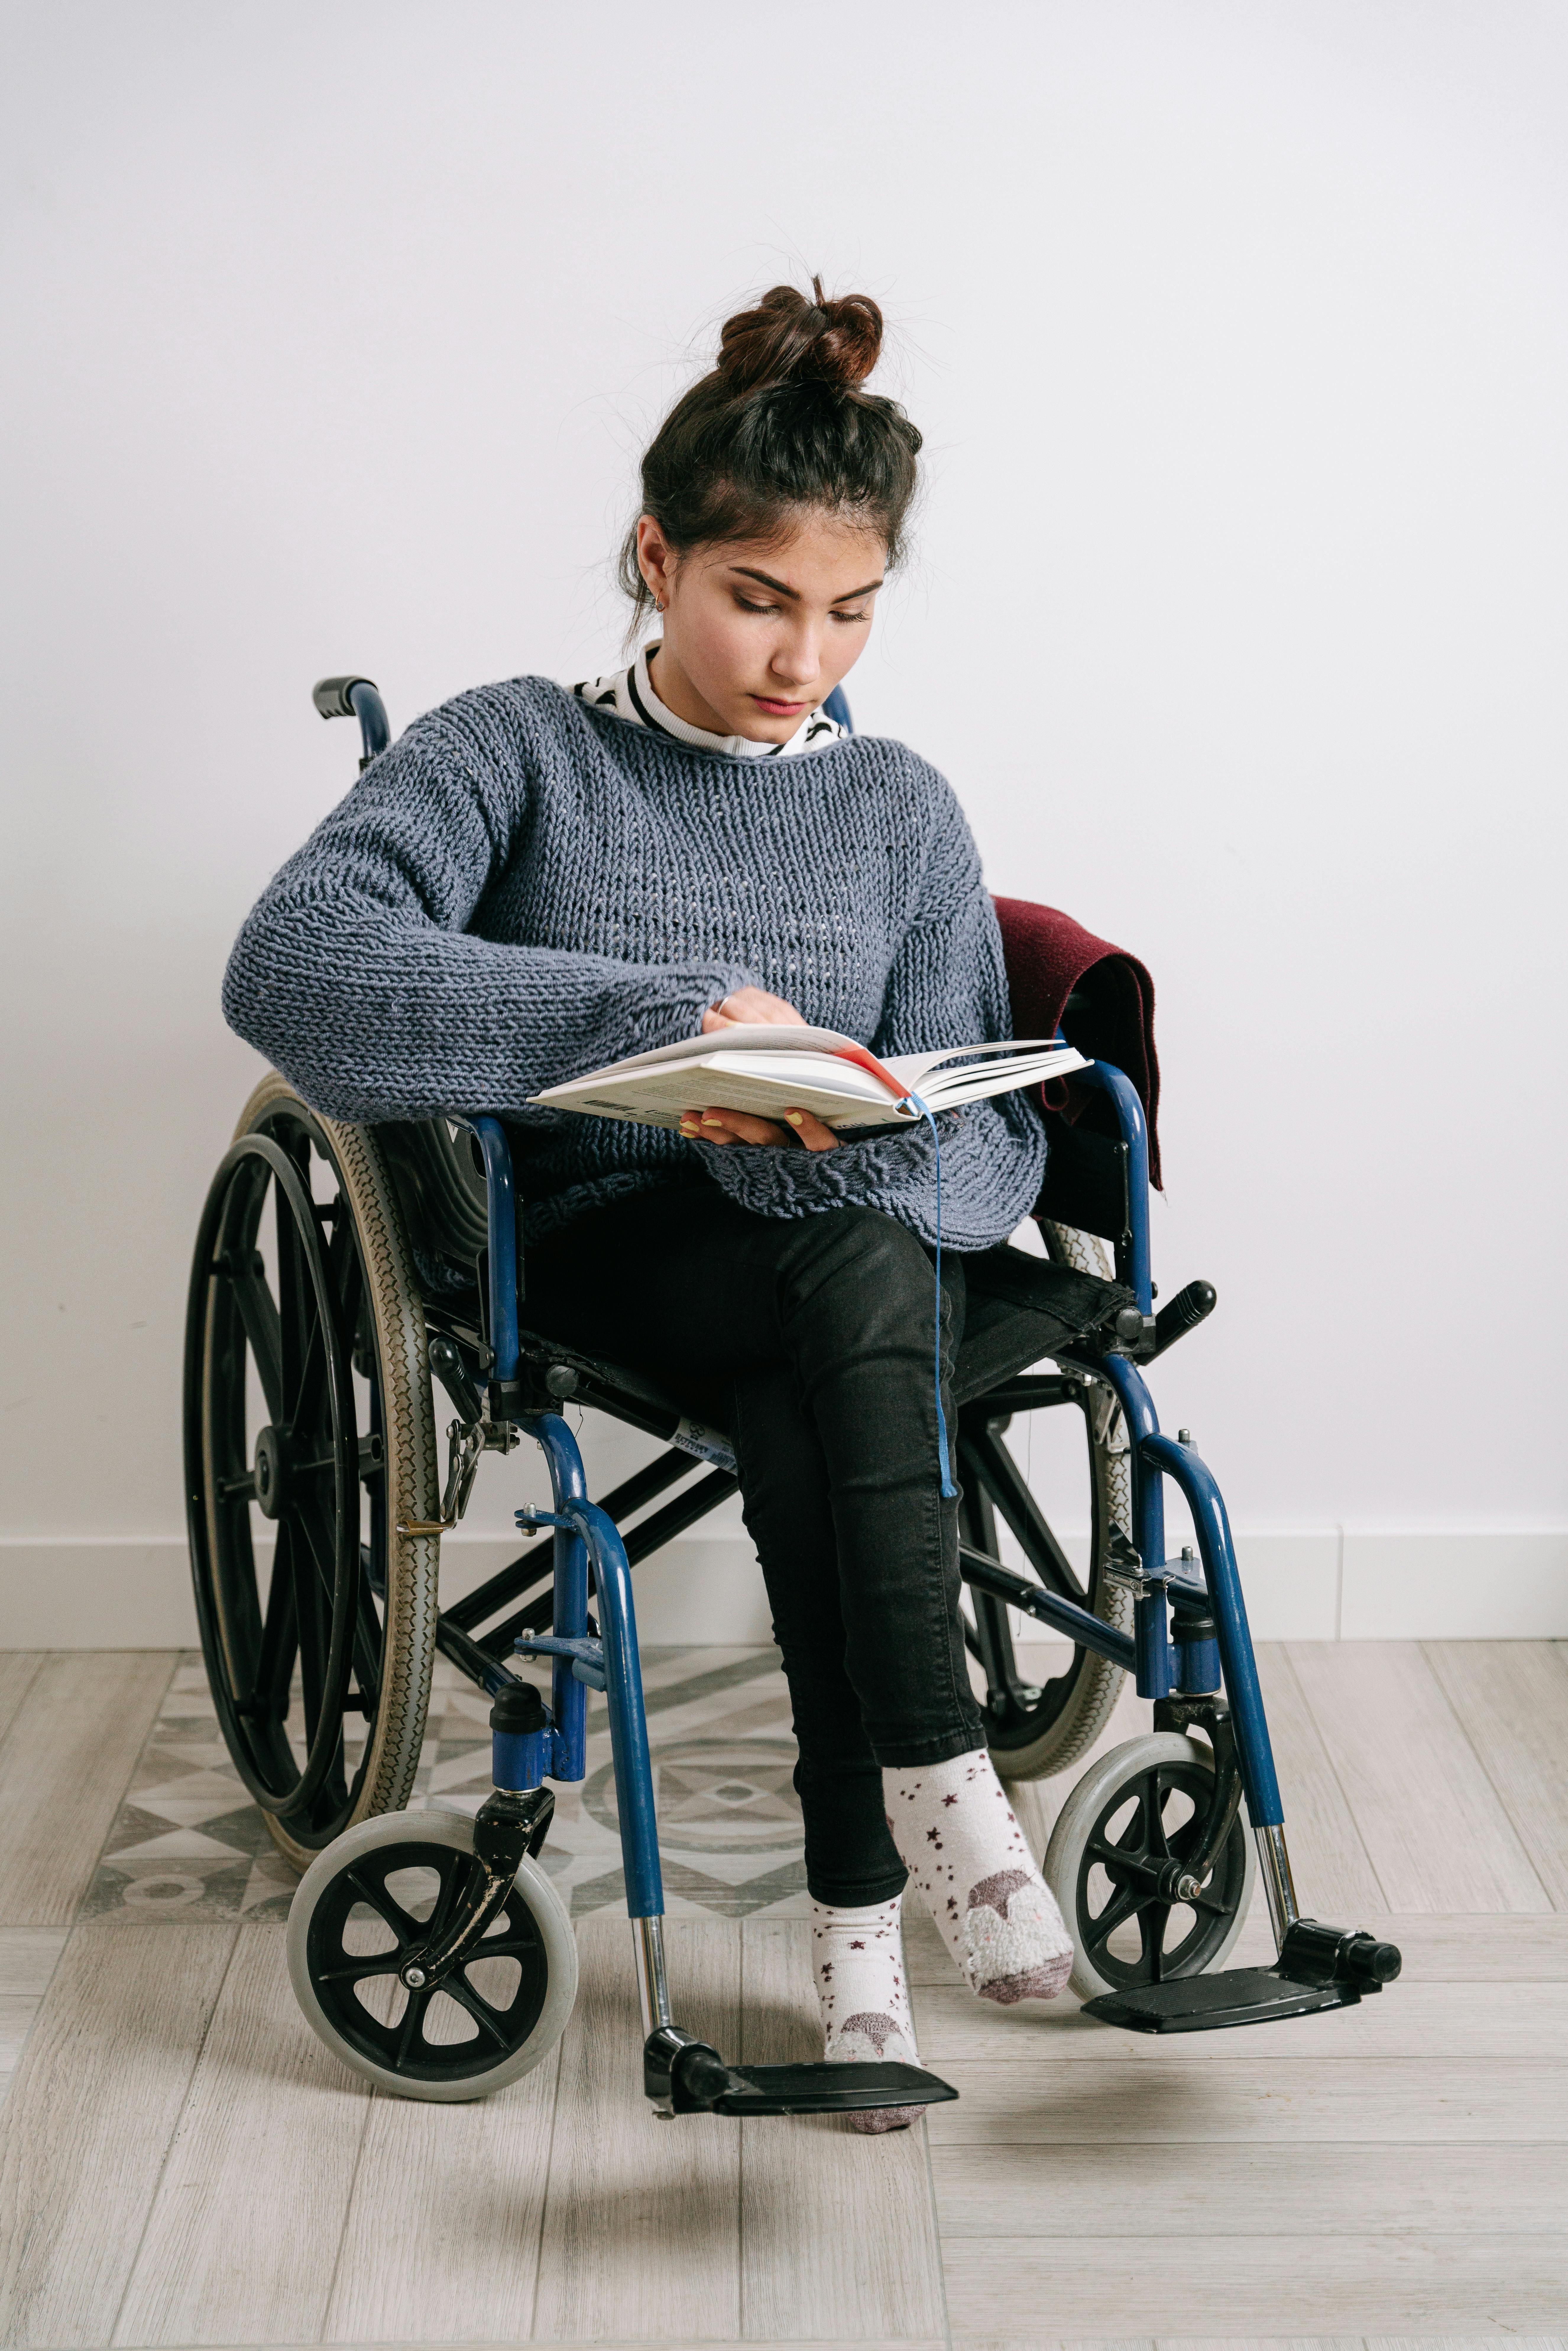 Une jeune femme en fauteuil roulant en train de lire. À des fins d'illustration uniquement | Source : Pexels